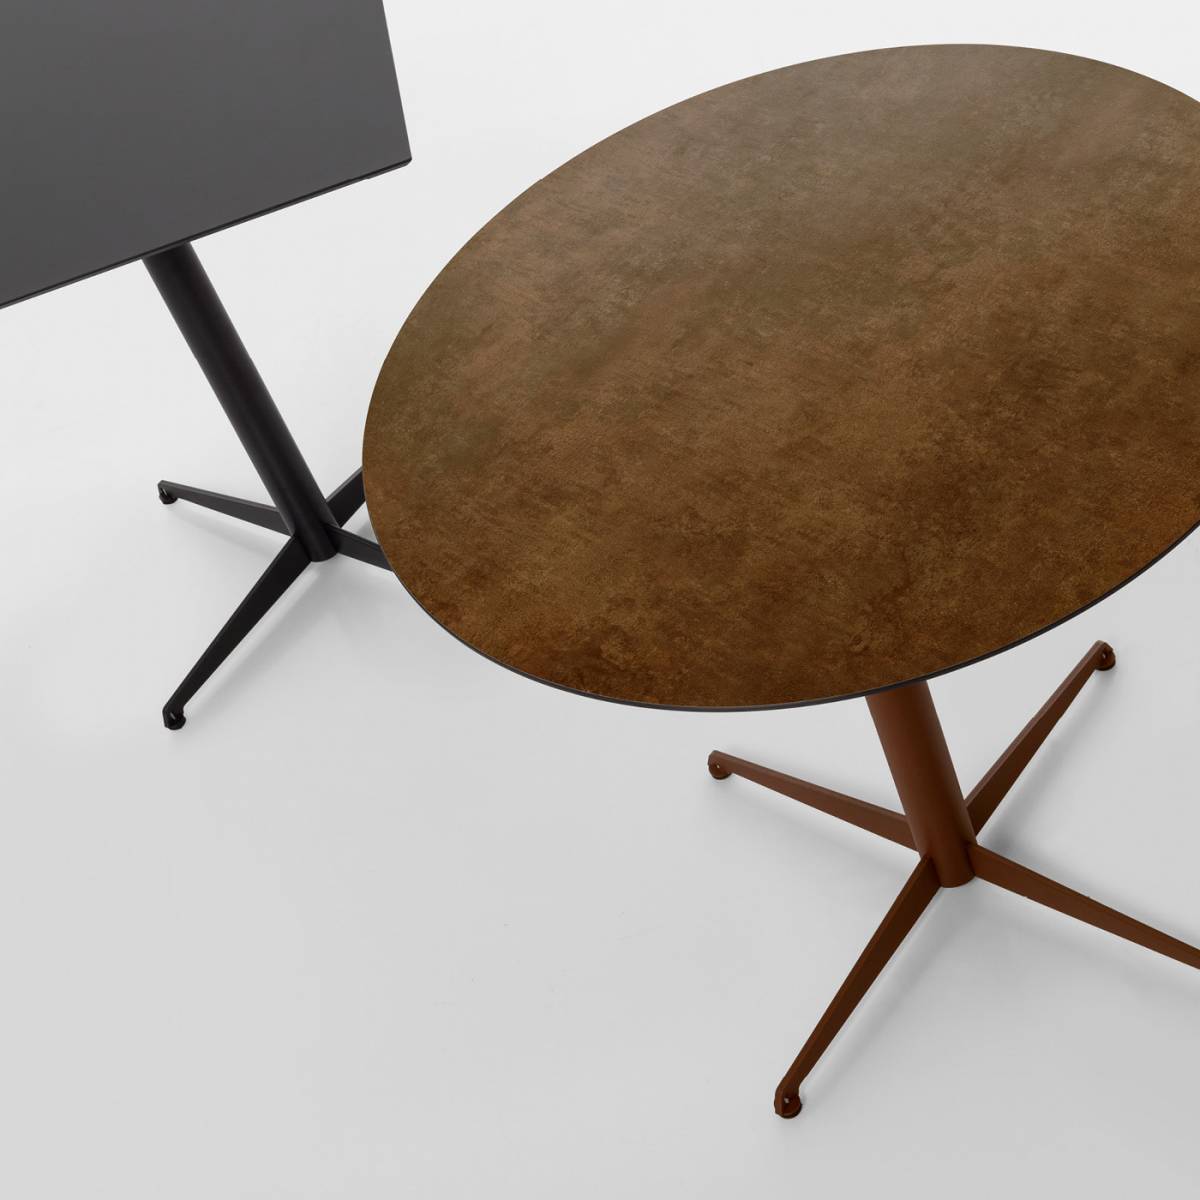 Pied de table pour terrasse - MobiKent Design